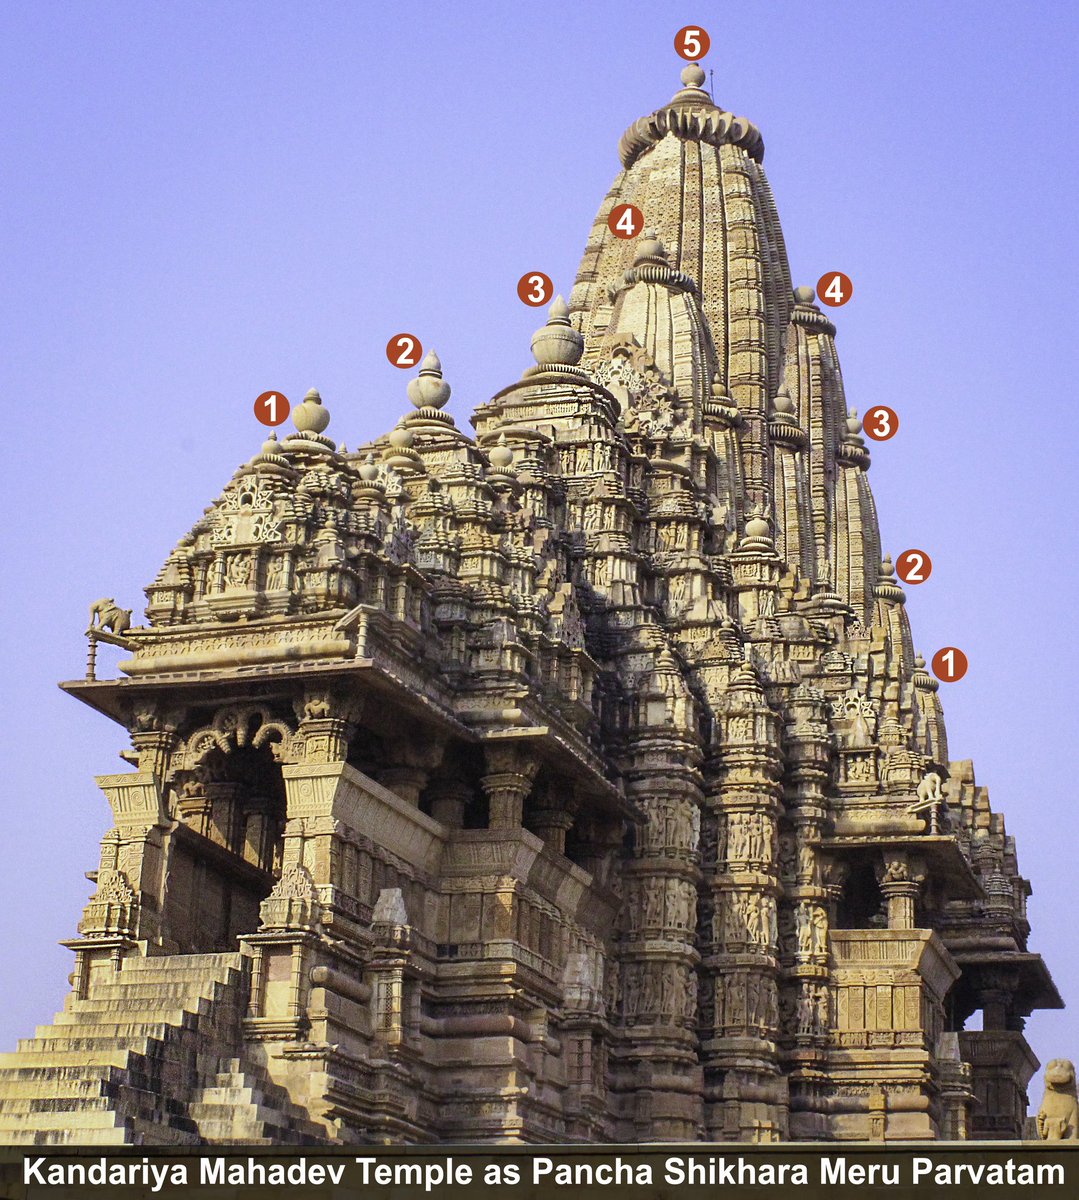 Did you know this about our temples?क्या आप हमारे मंदिरों के बारे में जानते हैं?External appearance of our temple looks like a Mountain.हमारे मंदिर का बाहरी स्वरूप पहाड़ जैसा दिखता है। @ReclaimTemples  @punarutthana  @LostTemple7